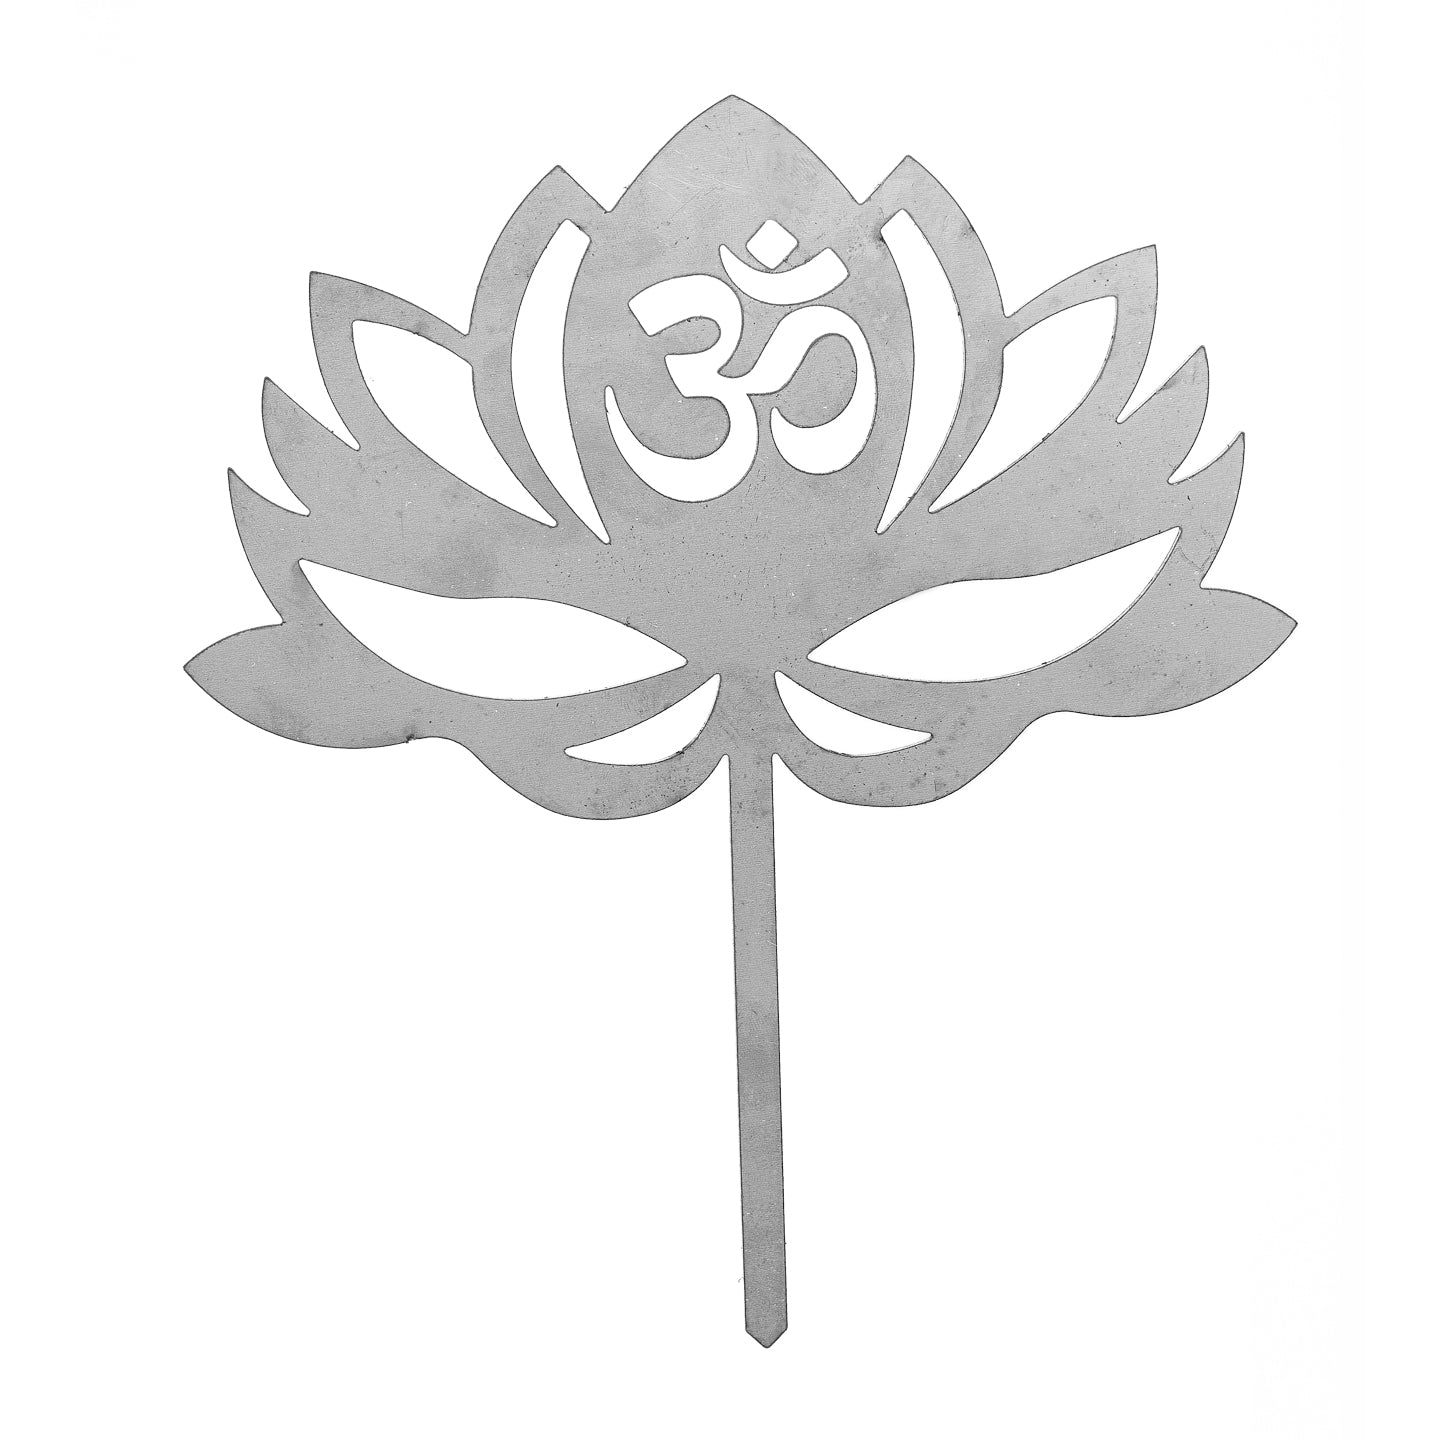 Edelstahl Lotusblume (mit Om-Zeichen) Beetstecker- Edelstahldeko für Beet, Blumentopf - Gartendeko Meditation/ Yoga